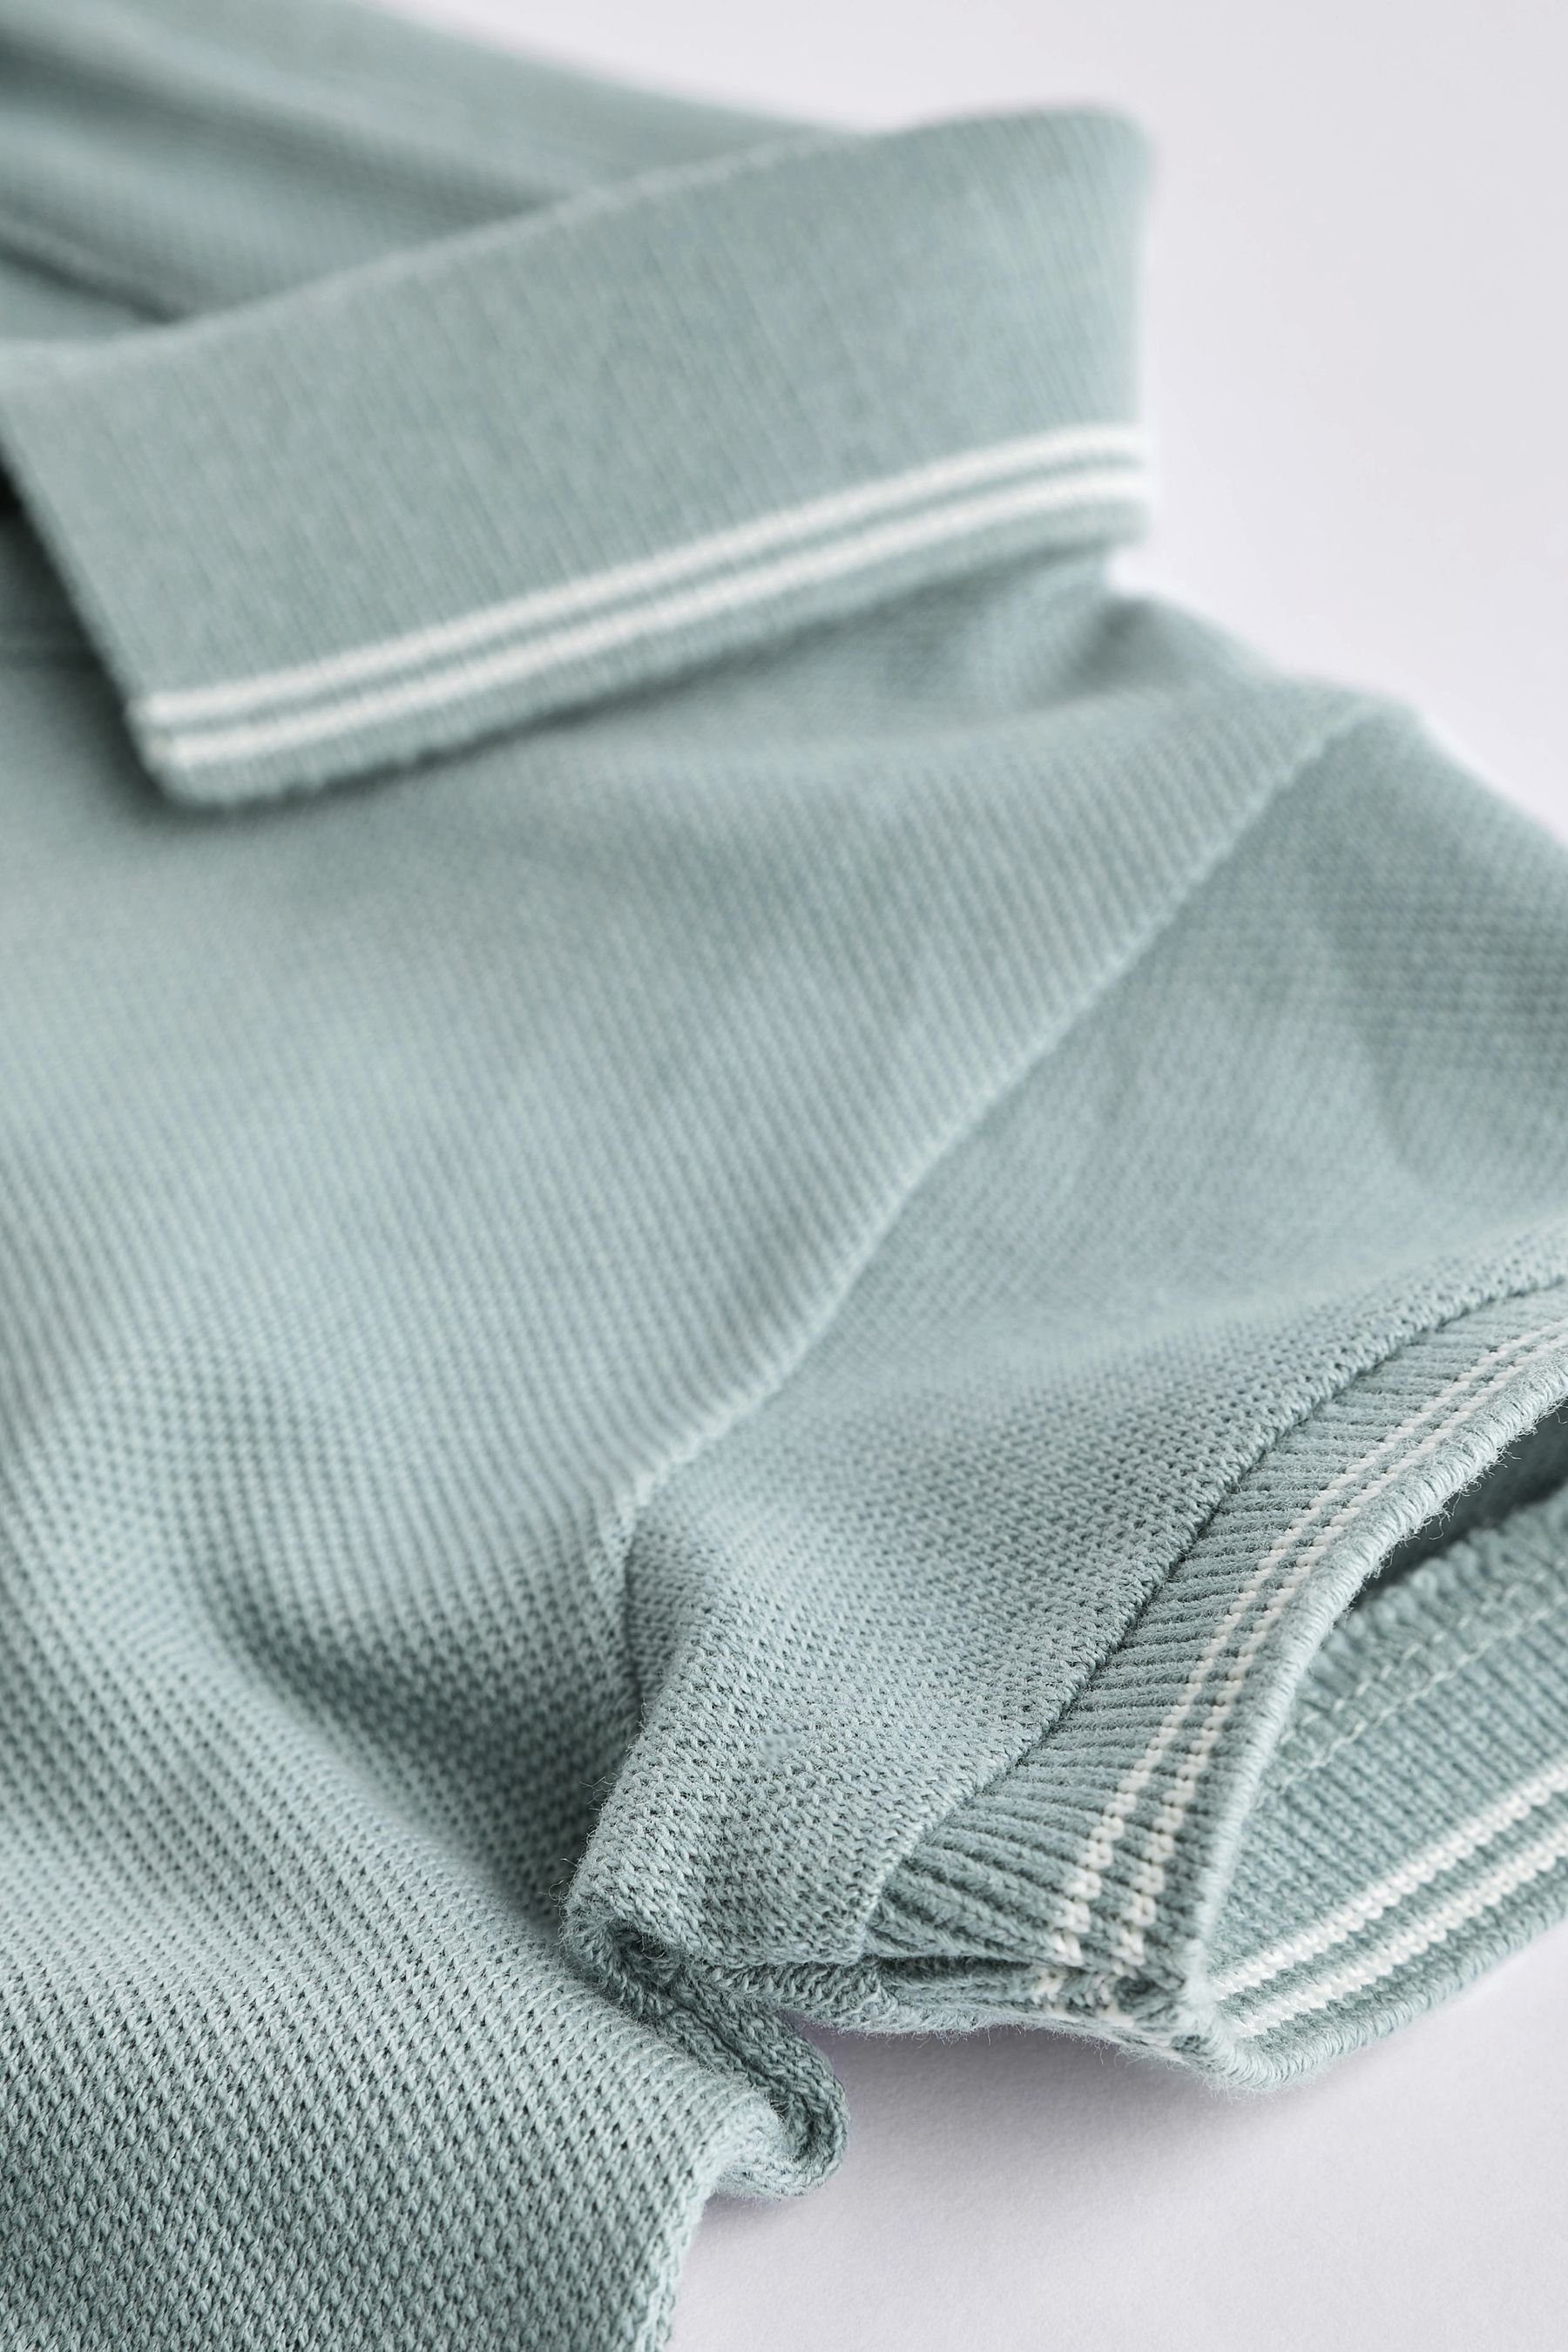 Next Shirtbody Body mit (1-tlg) für Sage Piqué-Poloshirt Babys Green